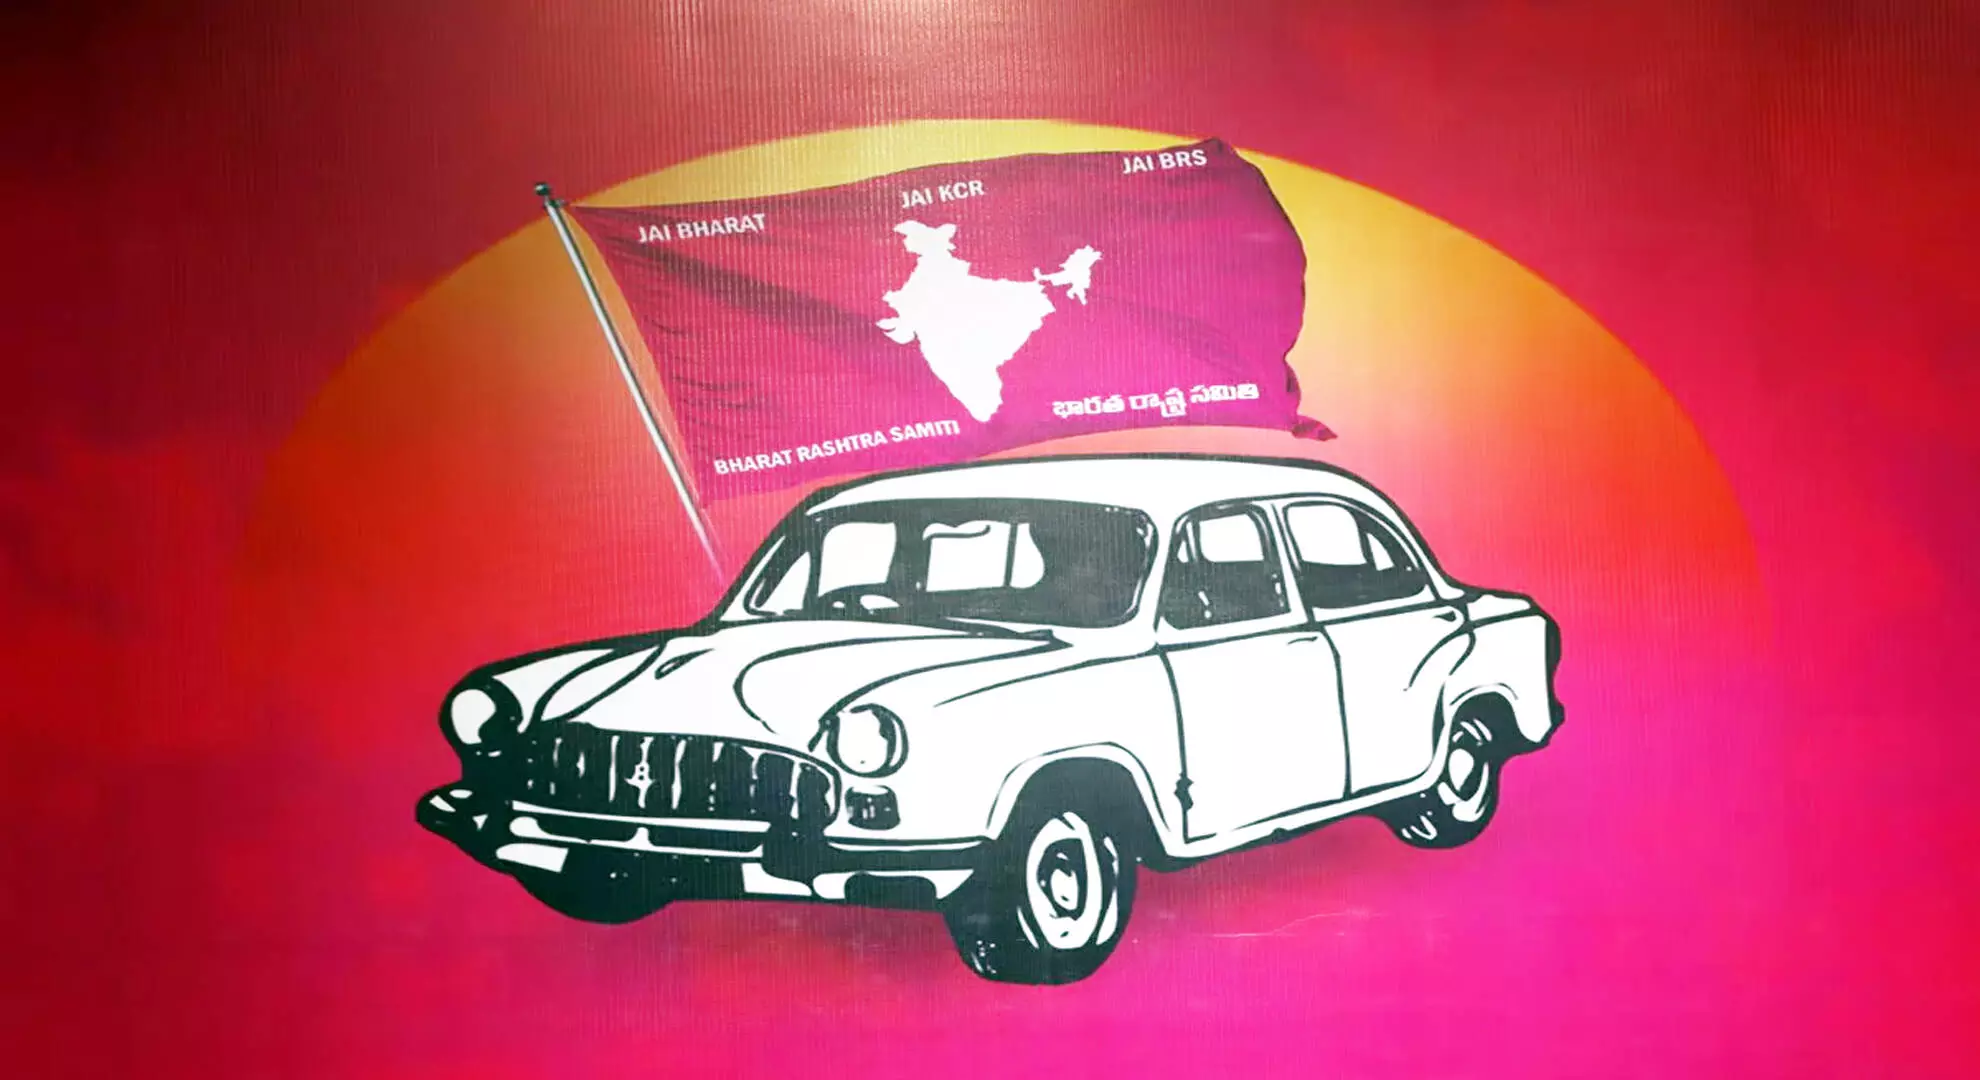 तेलंगाना में एक दशक तक सत्ता में रहने के बाद बीआरएस की राजनीति पूरी तरह सामने आ गई है